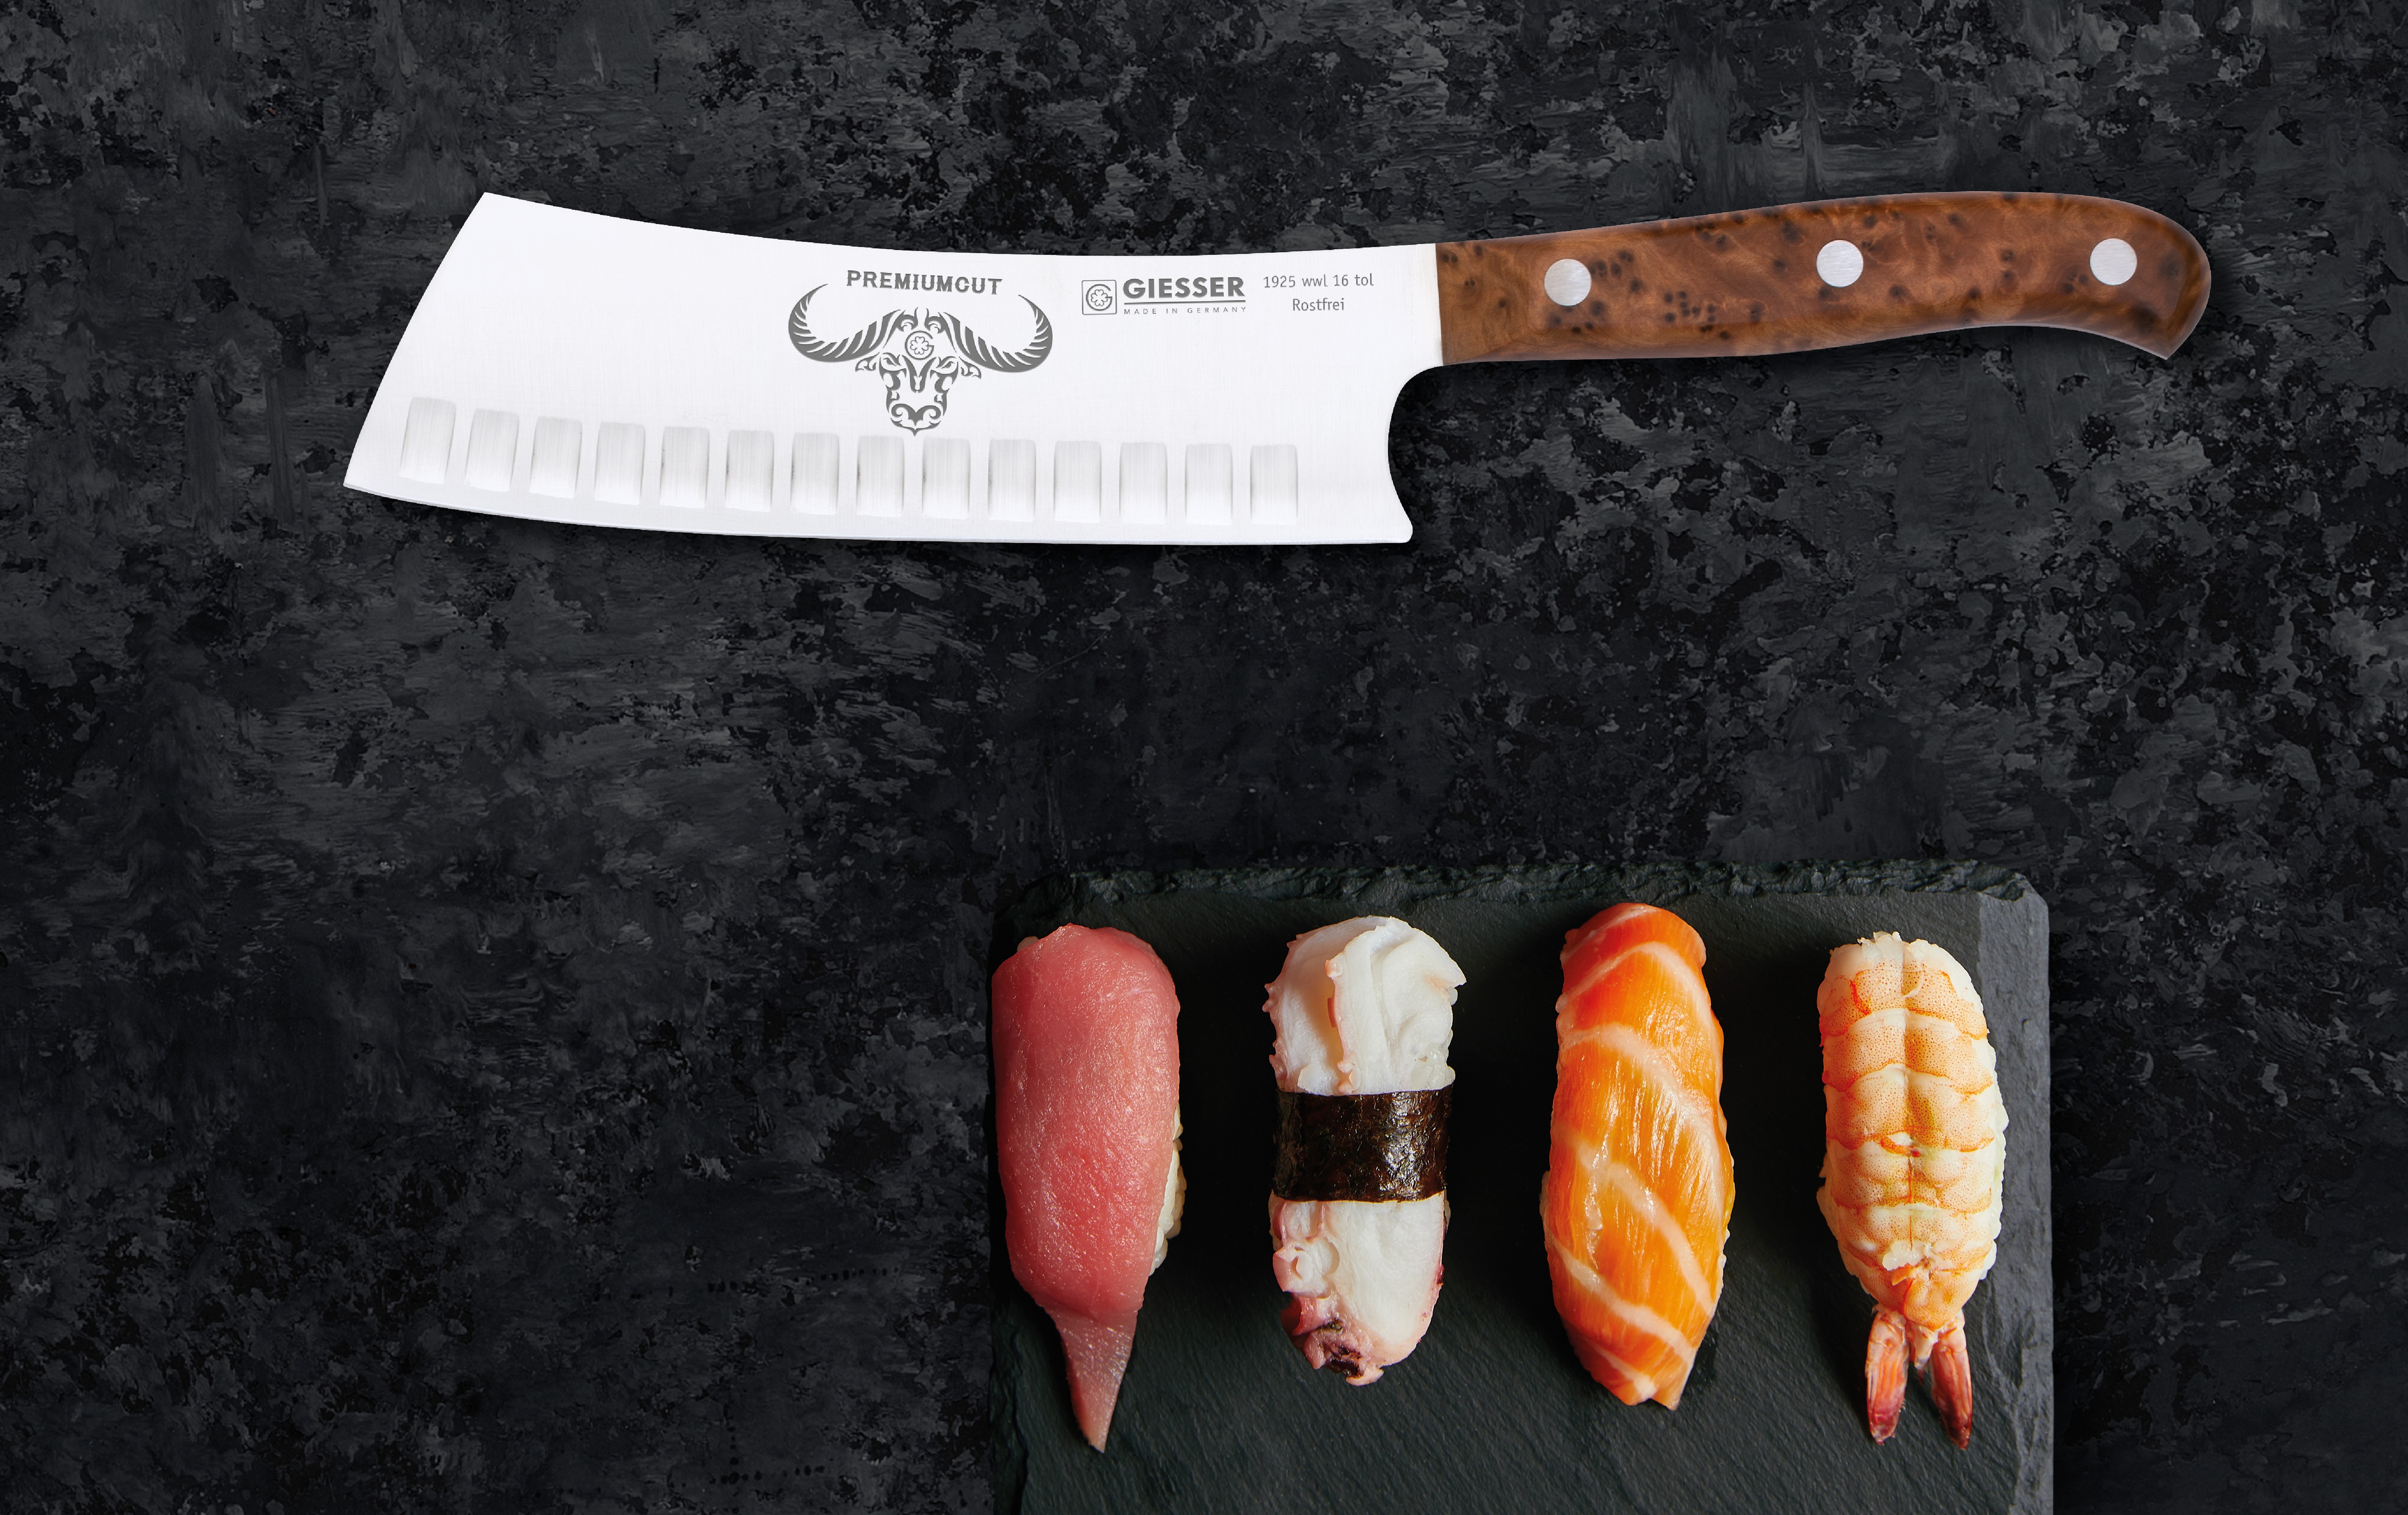 Messer der Premiumcut Serie von Giesser